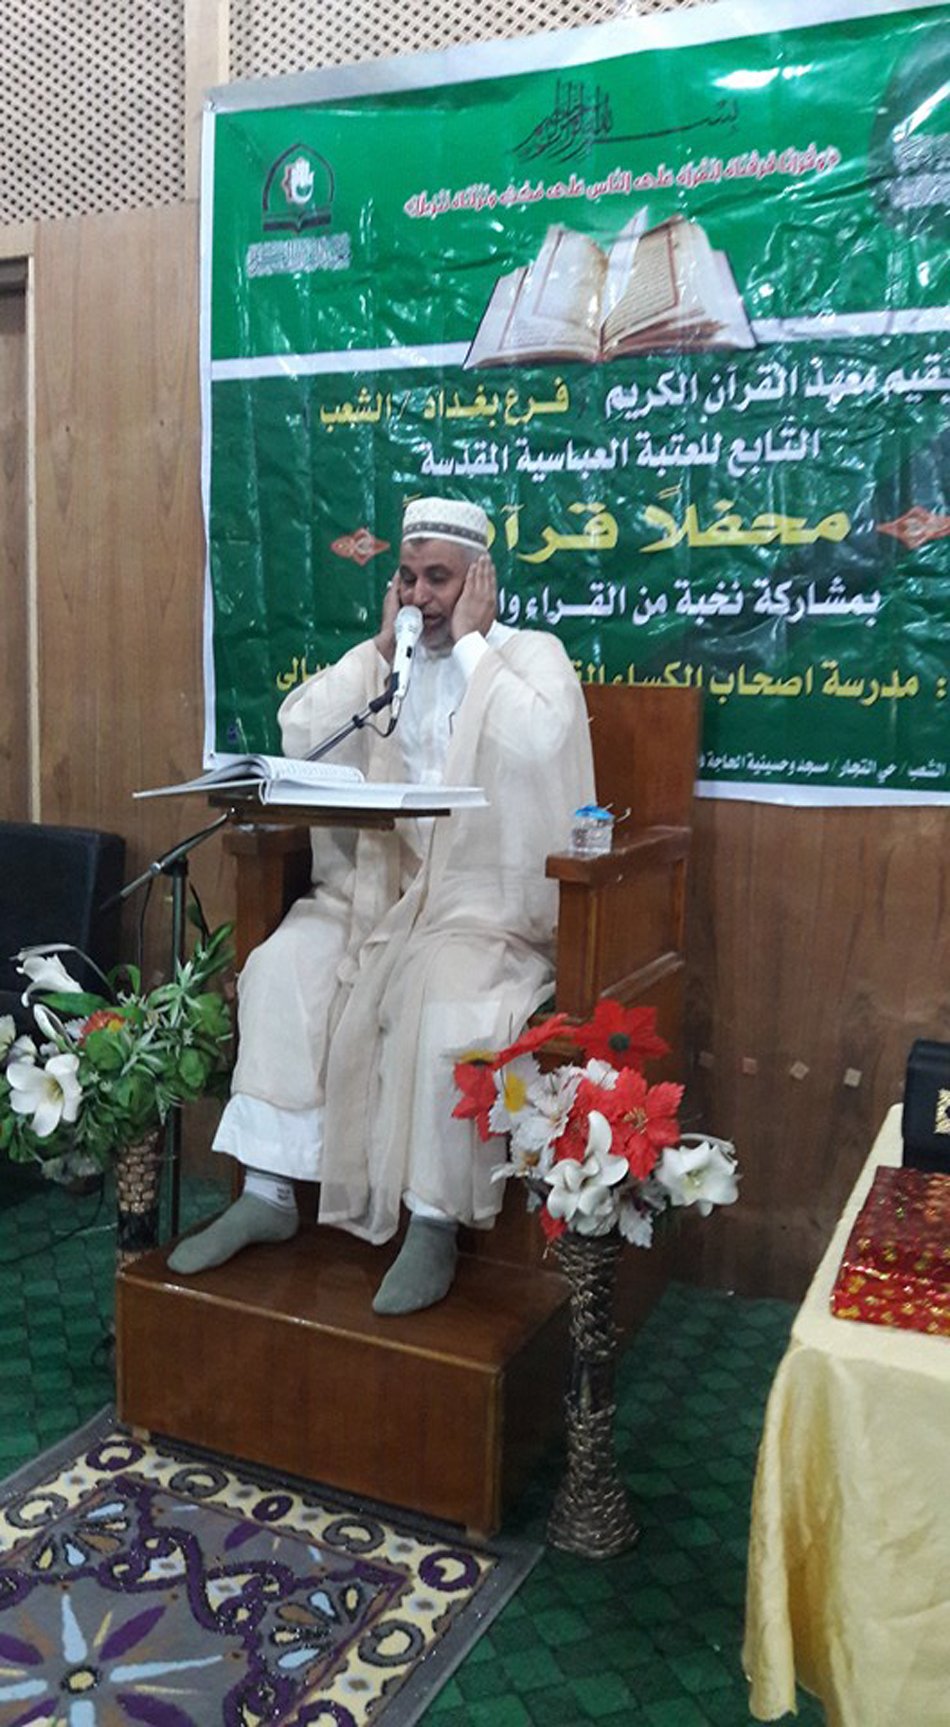 معهد القرآن الكريم (فرع بغداد الشعب) يقيم محفلاً قرآنياً مباركاً.